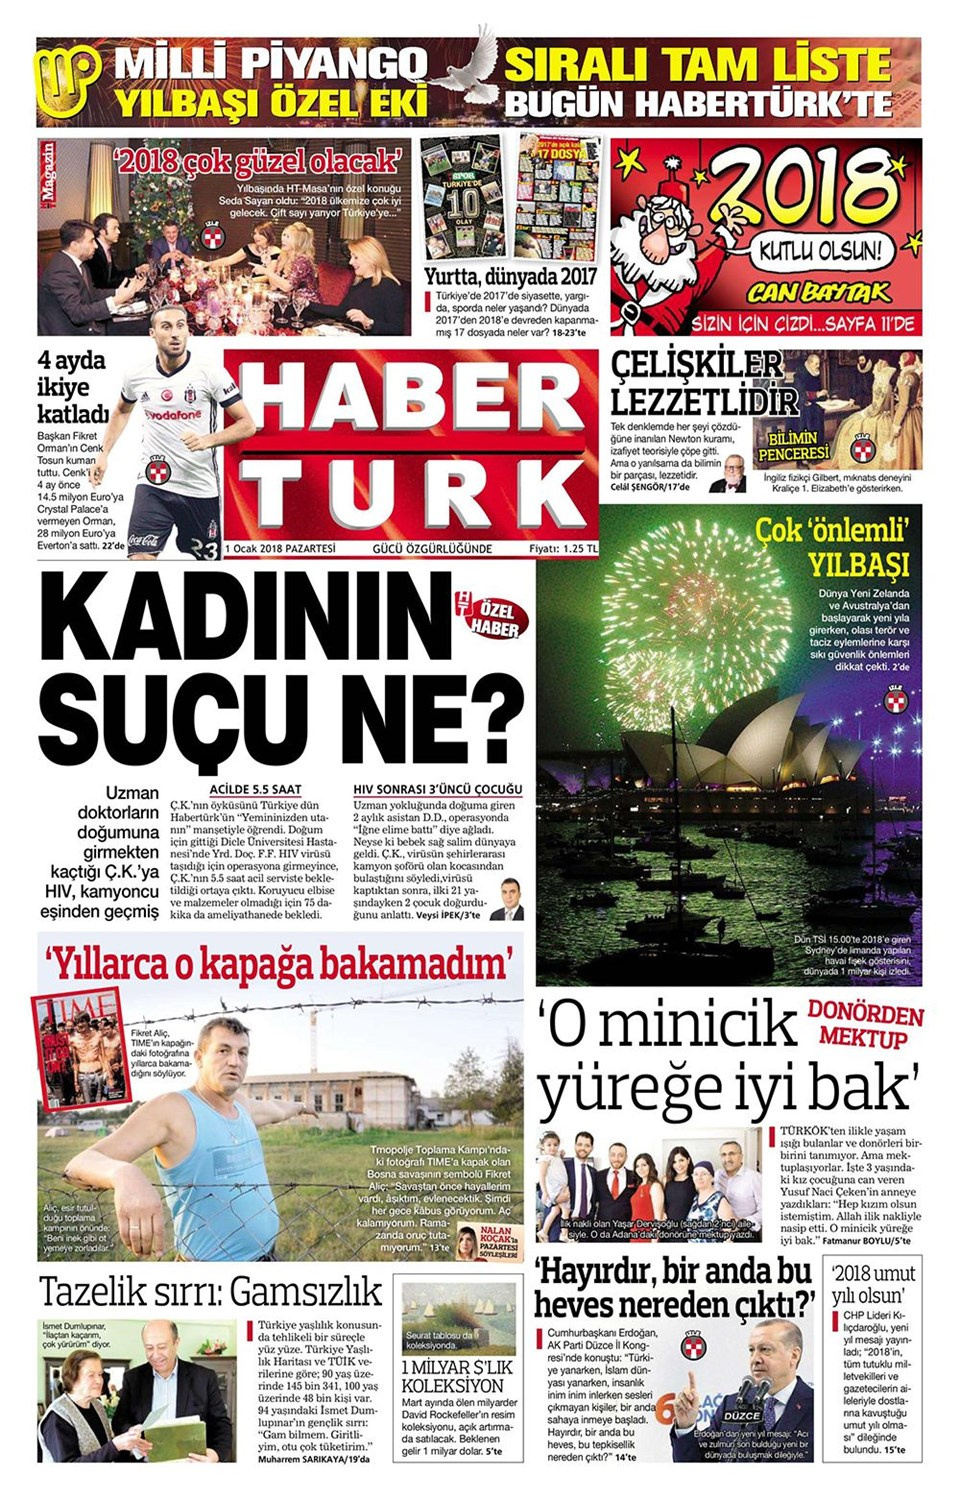 Gazete manşetleri Hürriyet - Milliyet - Habertürk 1 Ocak 2018